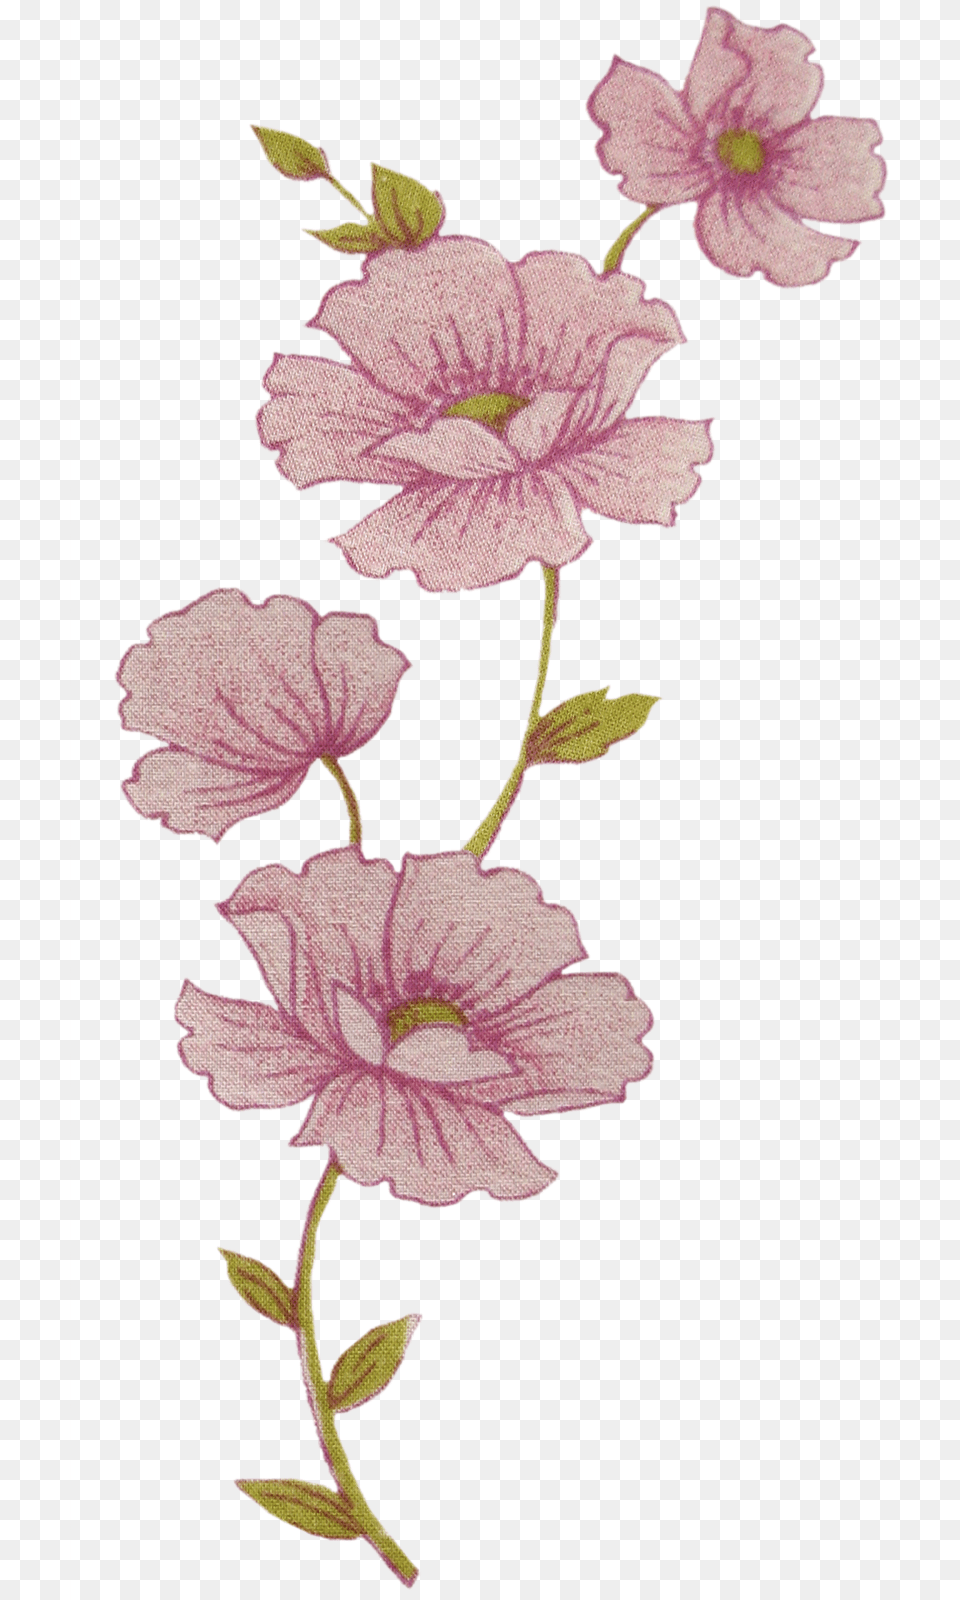 Flores De Tela Y Papel Rosas, Flower, Geranium, Plant, Acanthaceae Png Image